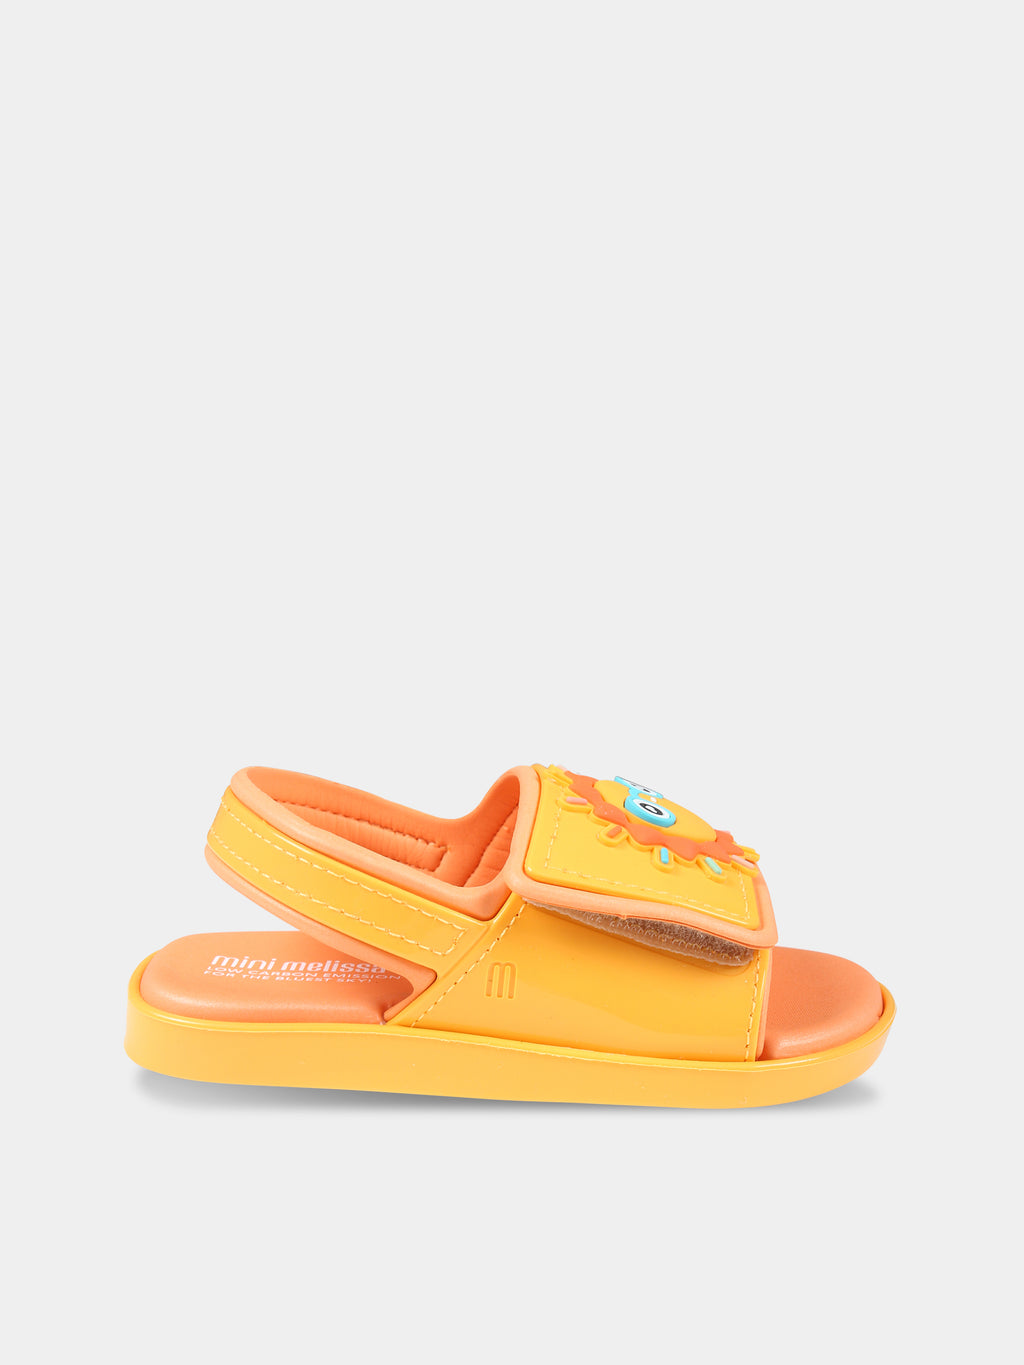 Sandali arancioni per bambini con sole e arcobaleno